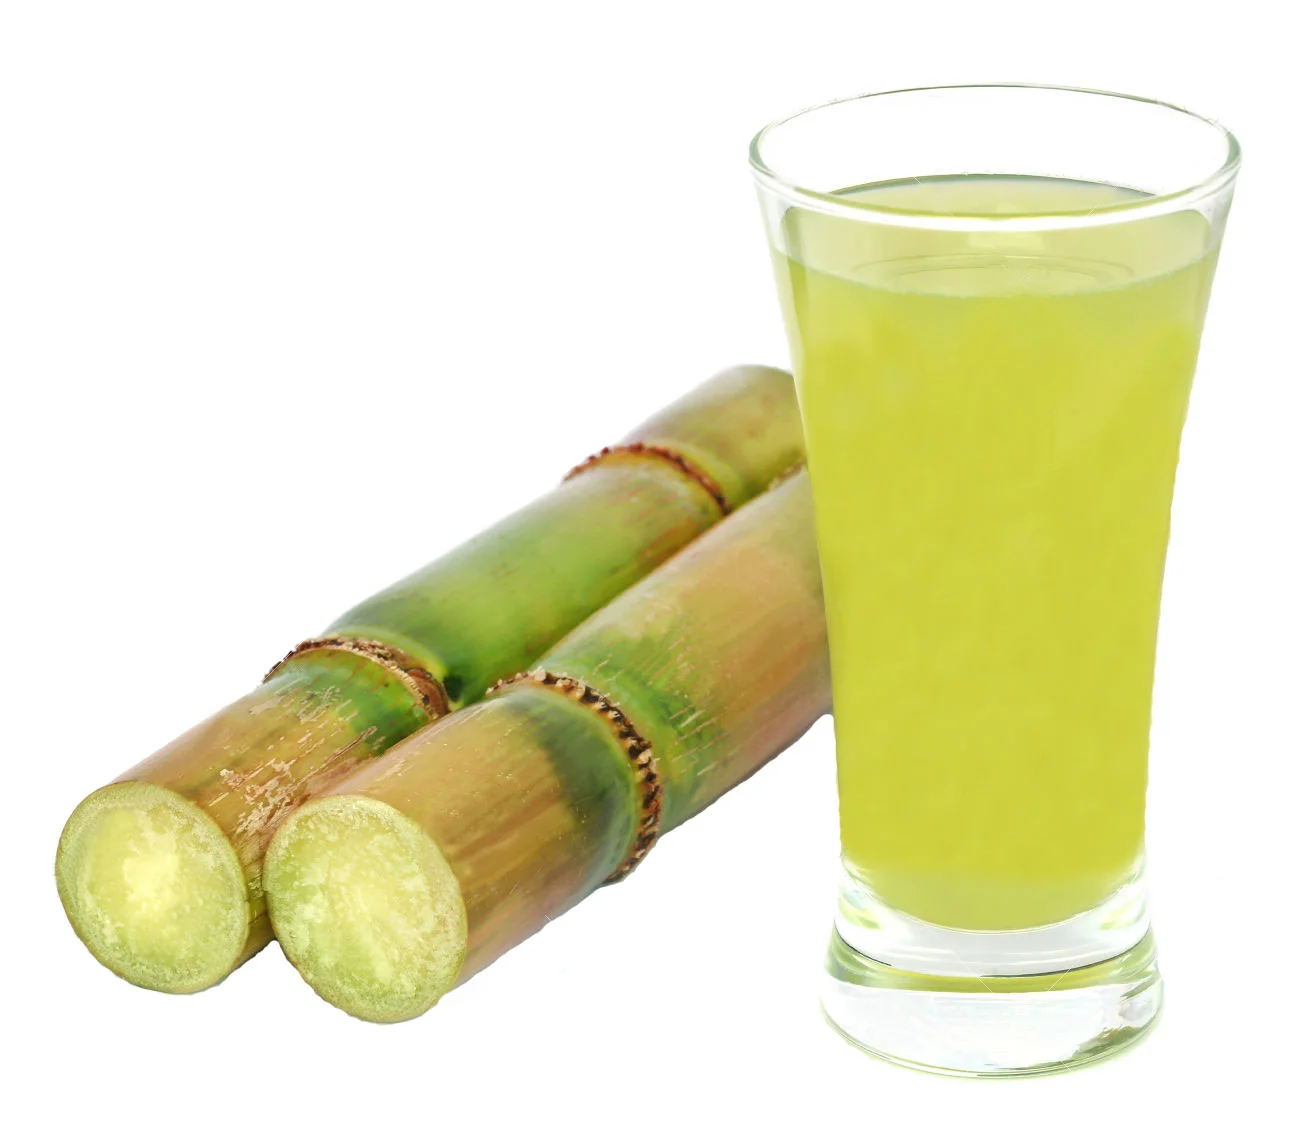 Sugar Cane Juice. Сахарный тростник культивируемый. Сок из тростника. Сок сахарного тростника